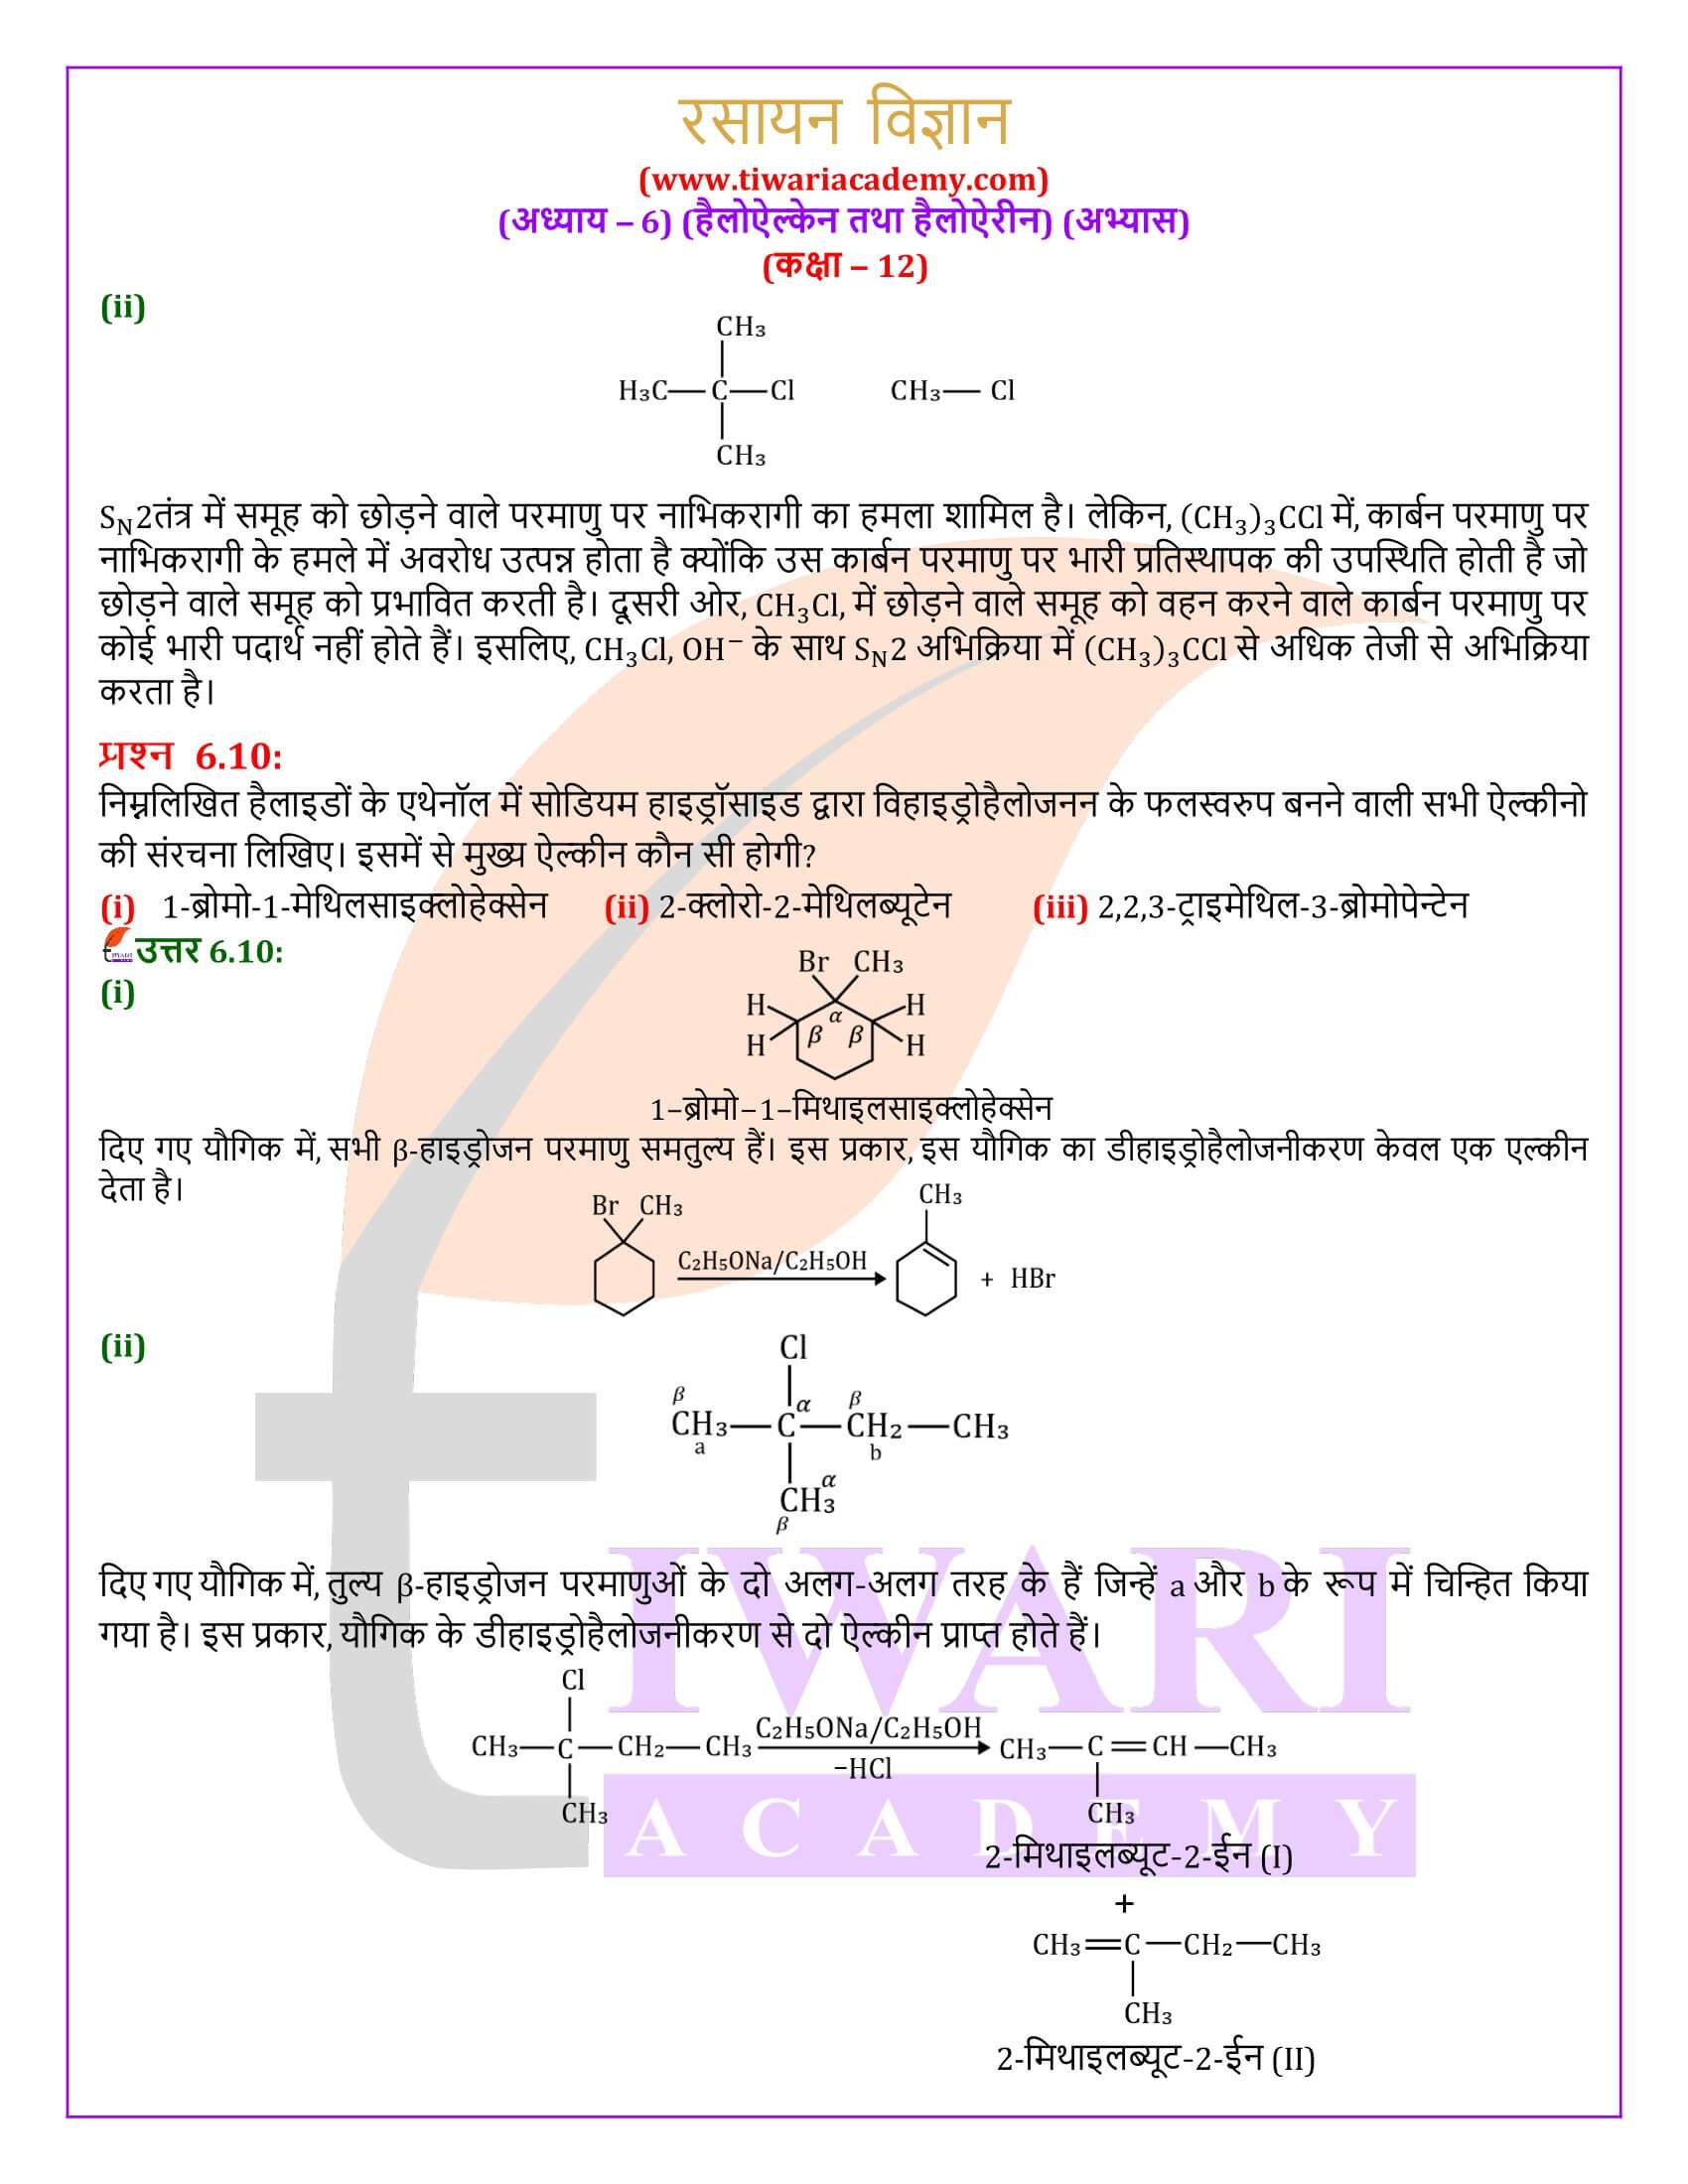 एनसीईआरटी समाधान कक्षा 12 रसायन विज्ञान अध्याय 6 अभ्यास के उत्तर